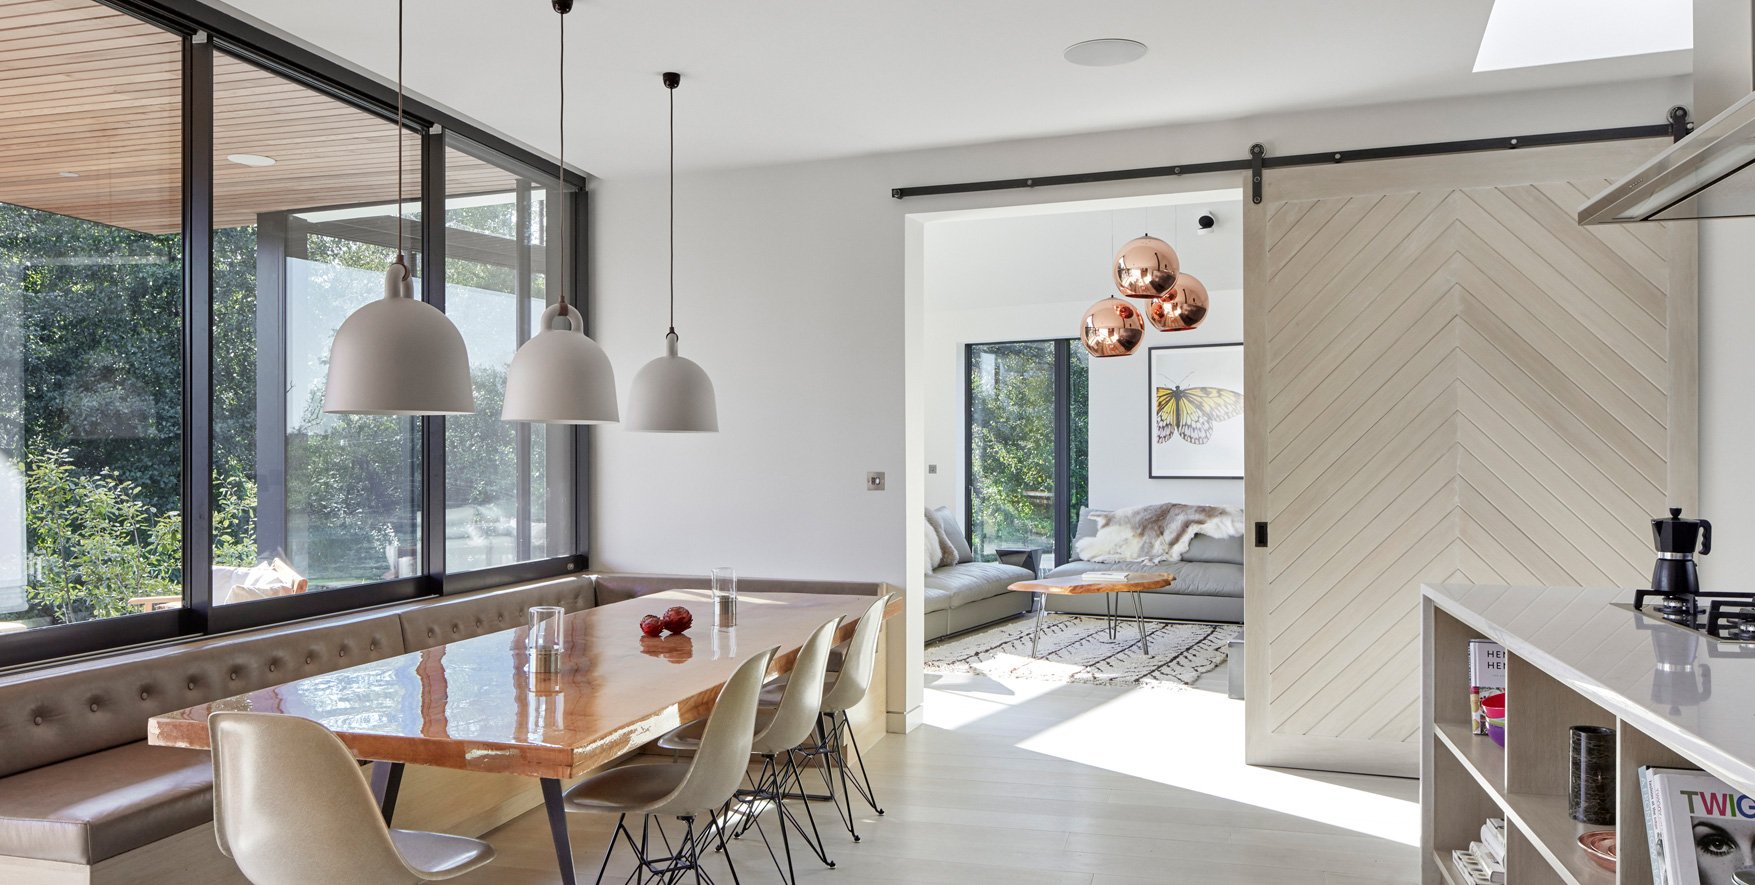 Axel-interior-sliding-barn-door-hardware-in-raw-steel-finish-installed-in-modern-dining-room